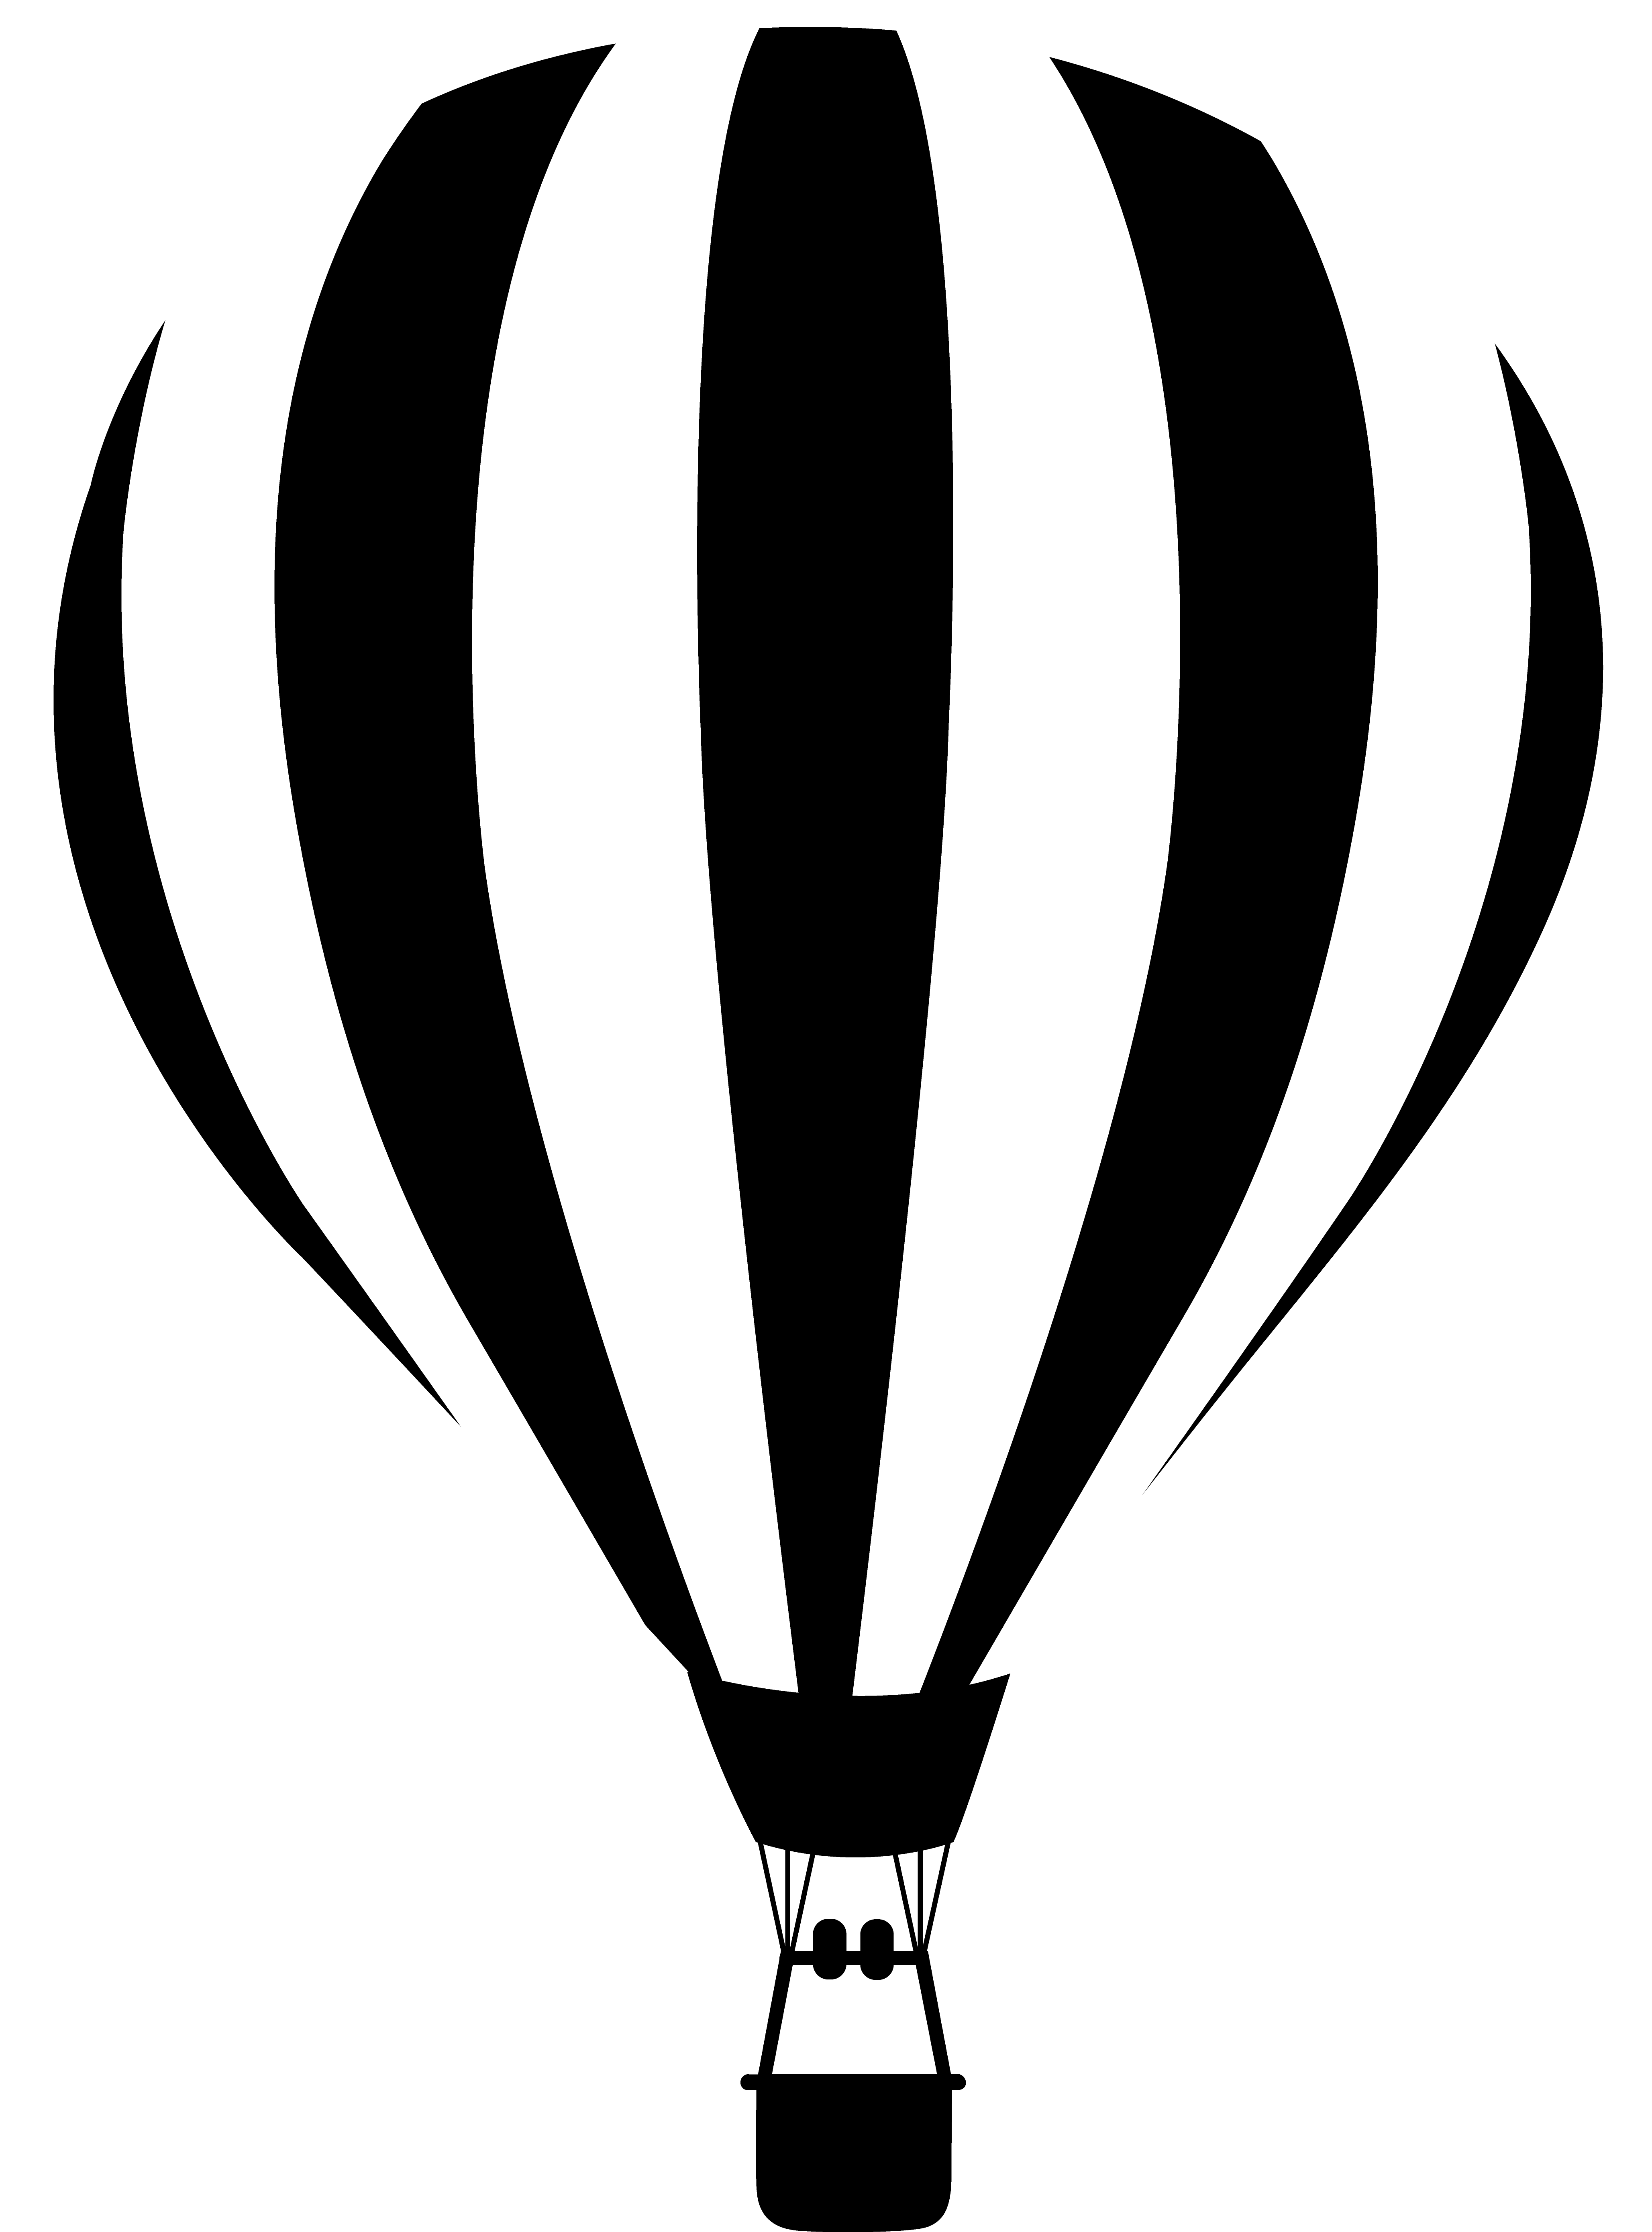 Hot Air Balloon Striped Silhouette - Free Clip Art